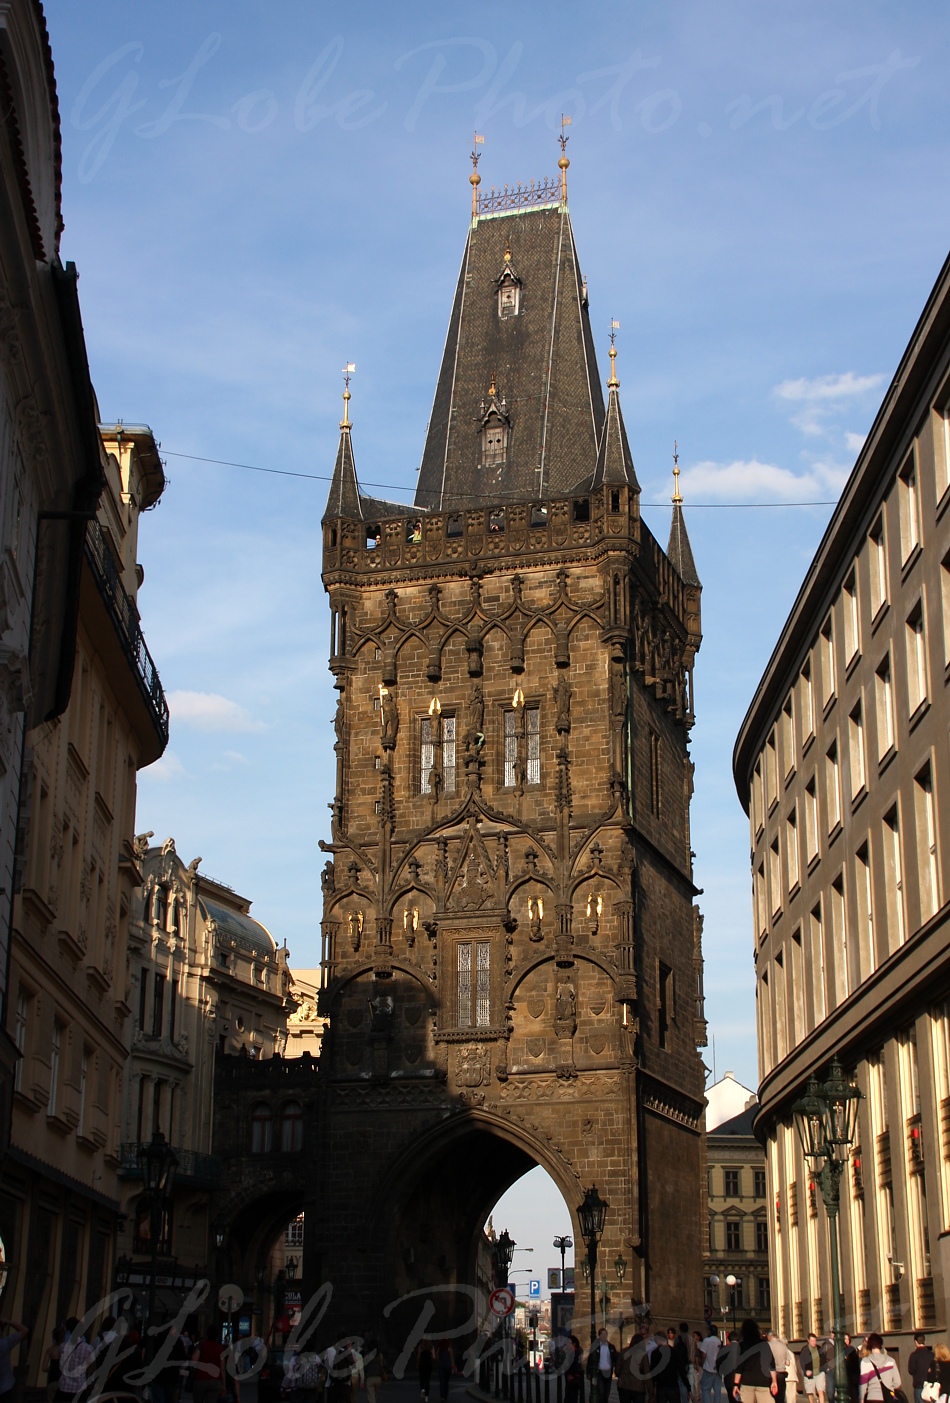 Prga, vros - Old Town in Prague